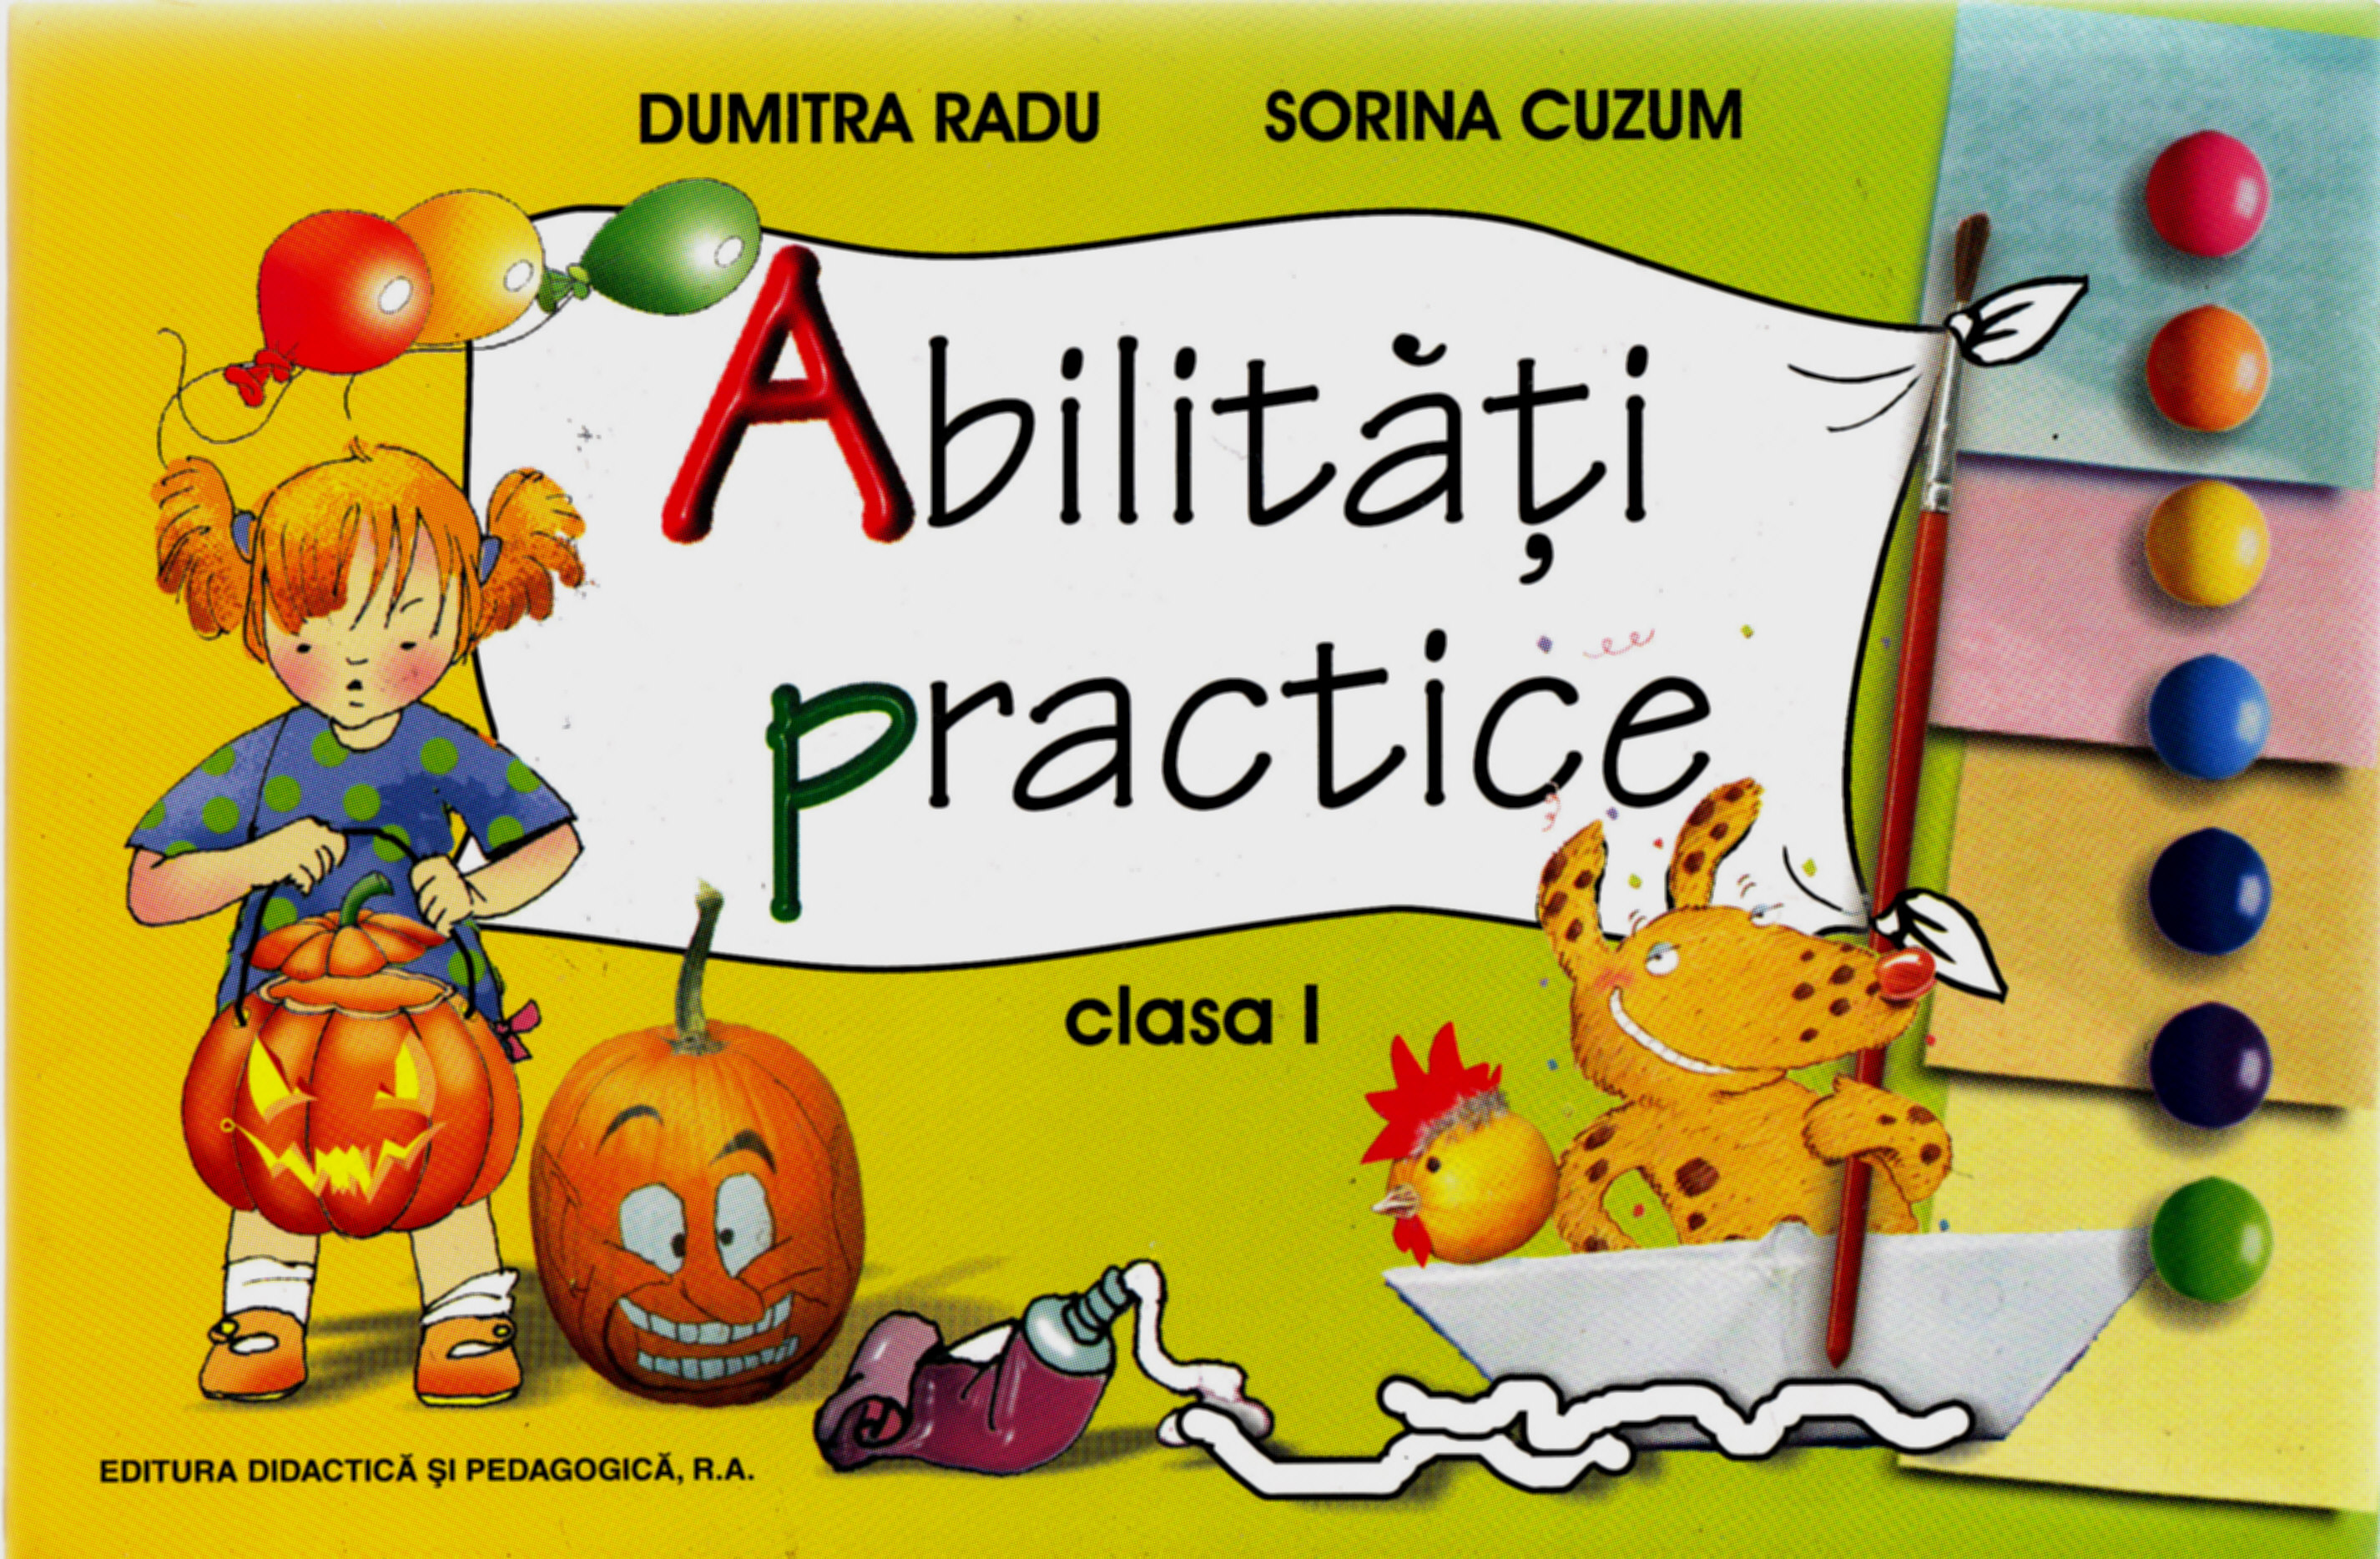 Abilitati practice clasa 1 - Dumitra Radu